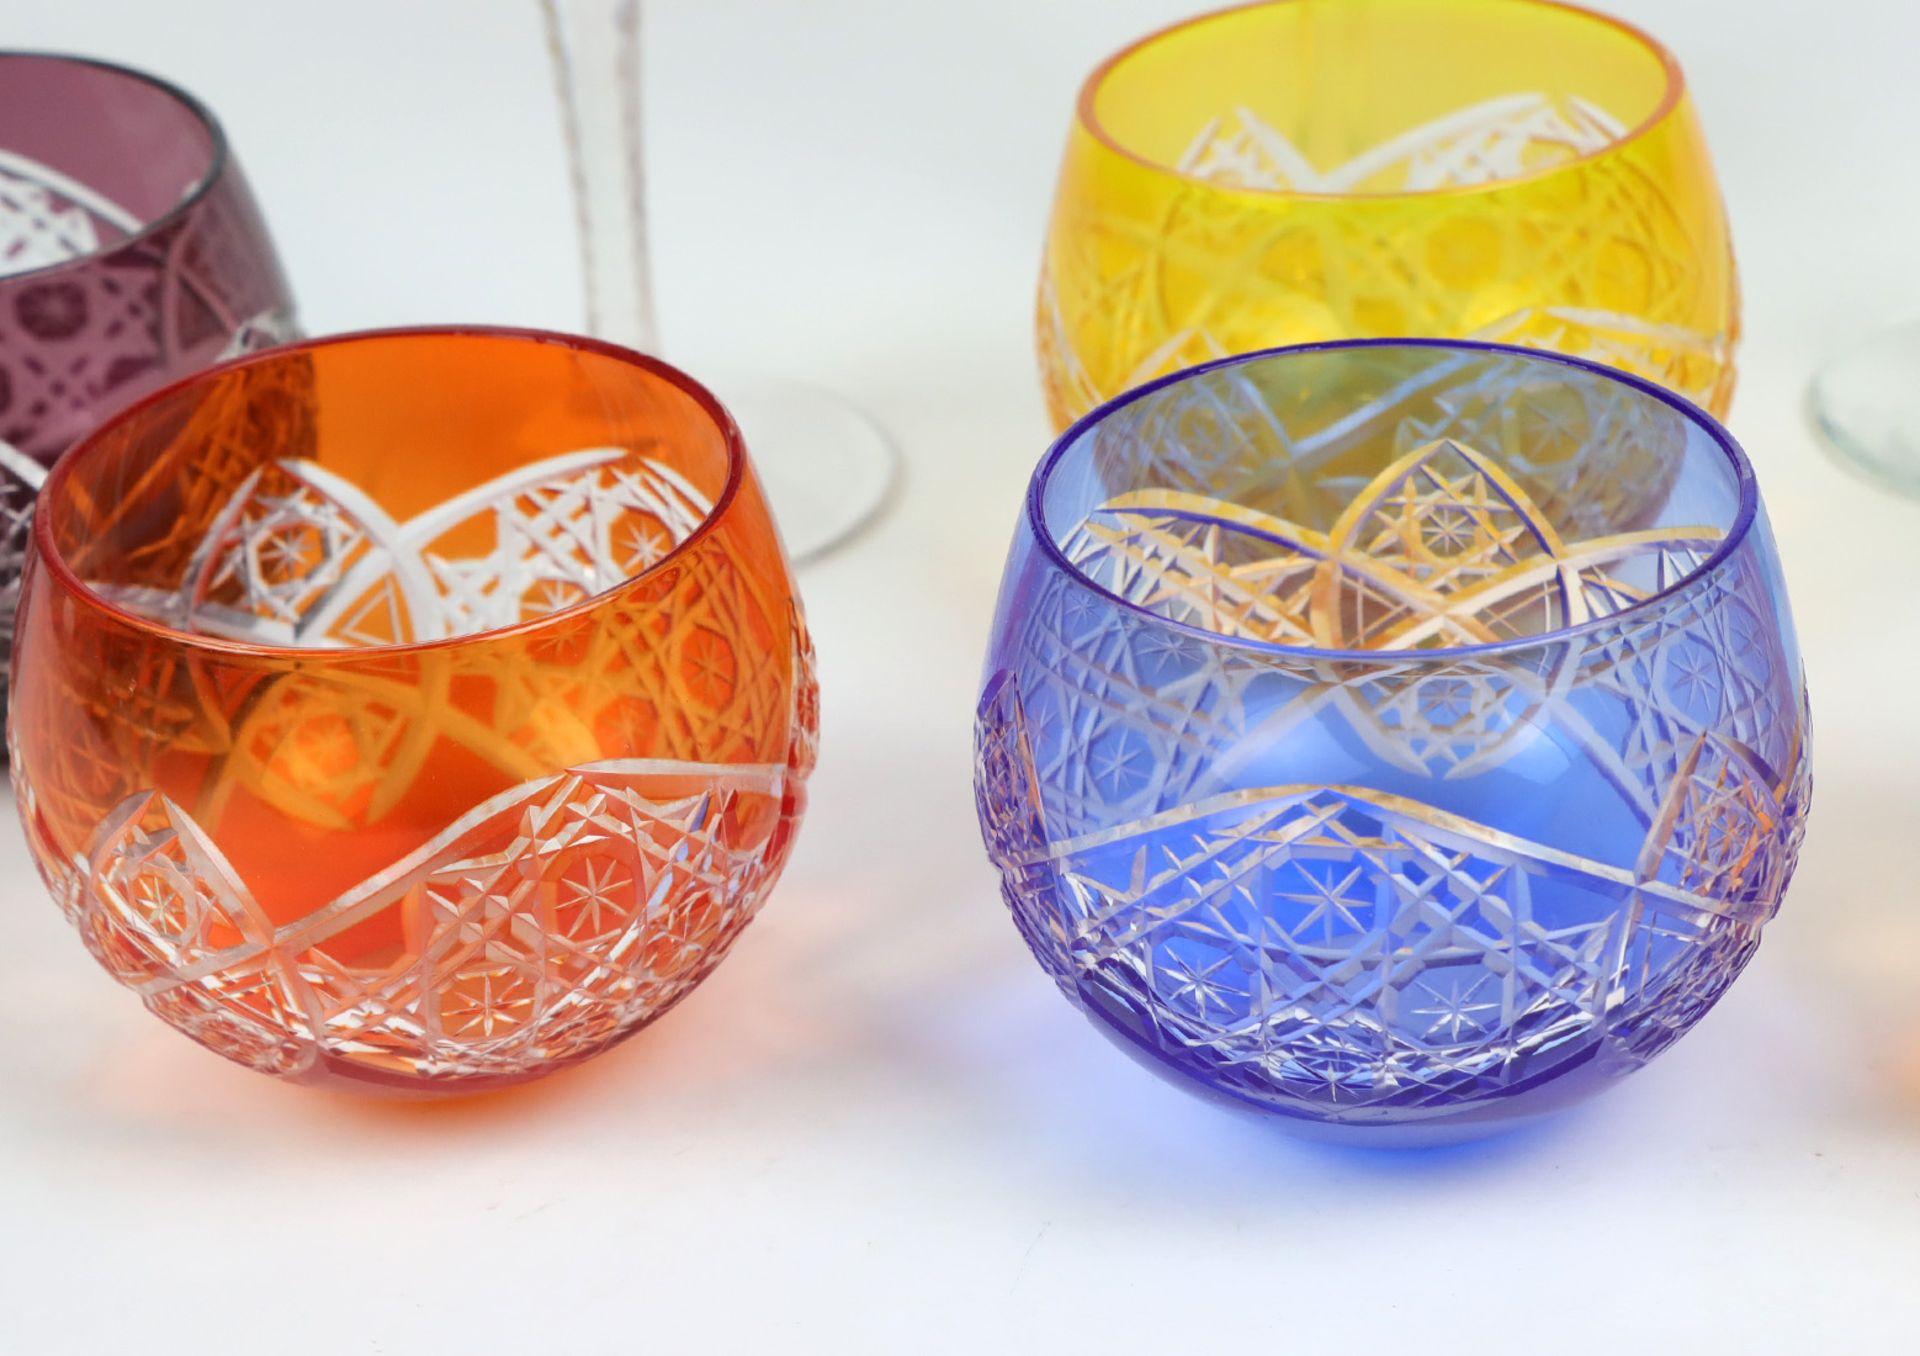 9 Kristallgläserfarbloses Kristallglas mundgeblasen, Kuppa verschieden farbig überfa - Image 2 of 4